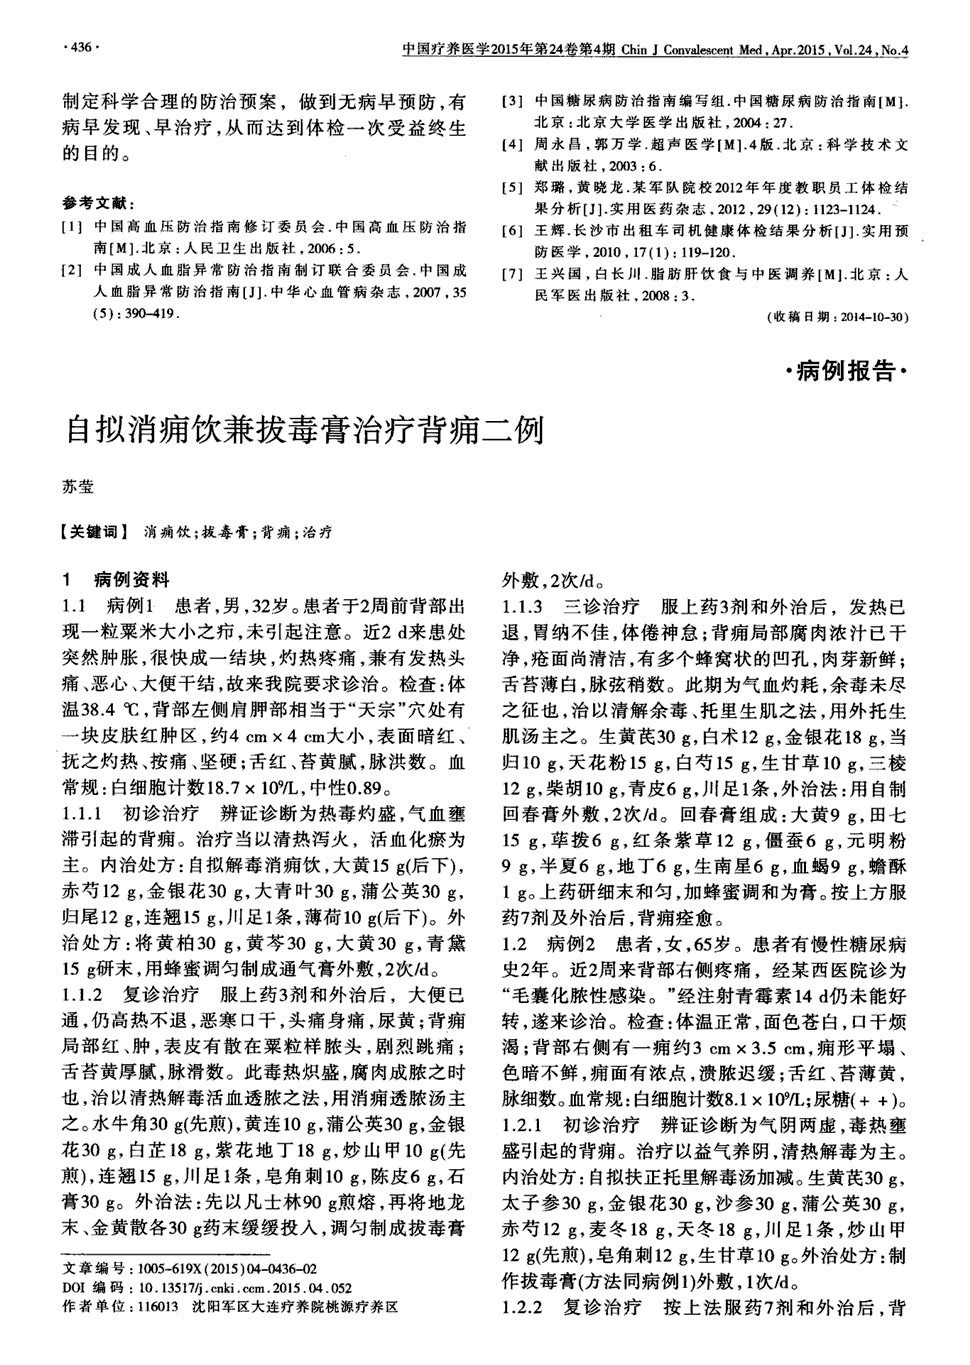 《中国疗养医学》2015年第4期436-437,共2页苏莹